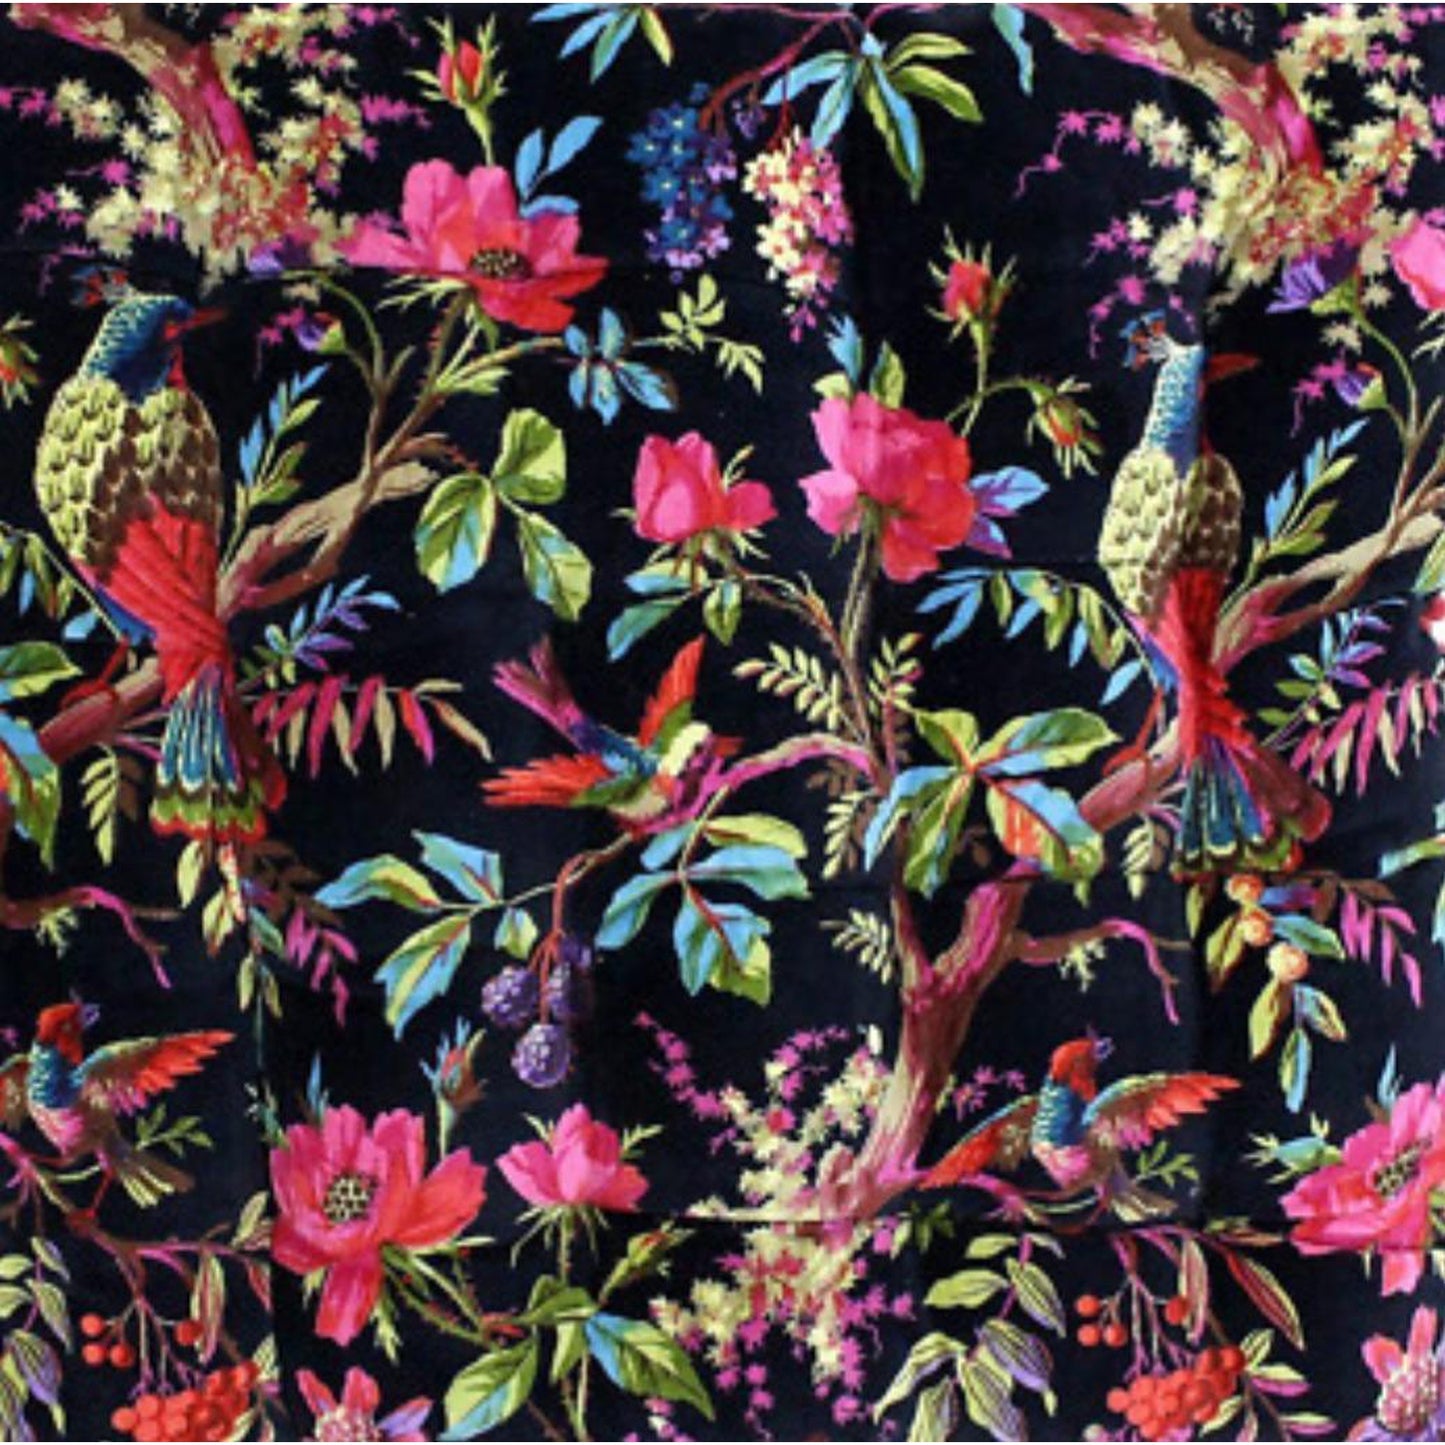 Velvet fabric Birds of Paradise for upholstery- Black - The Teal Thread